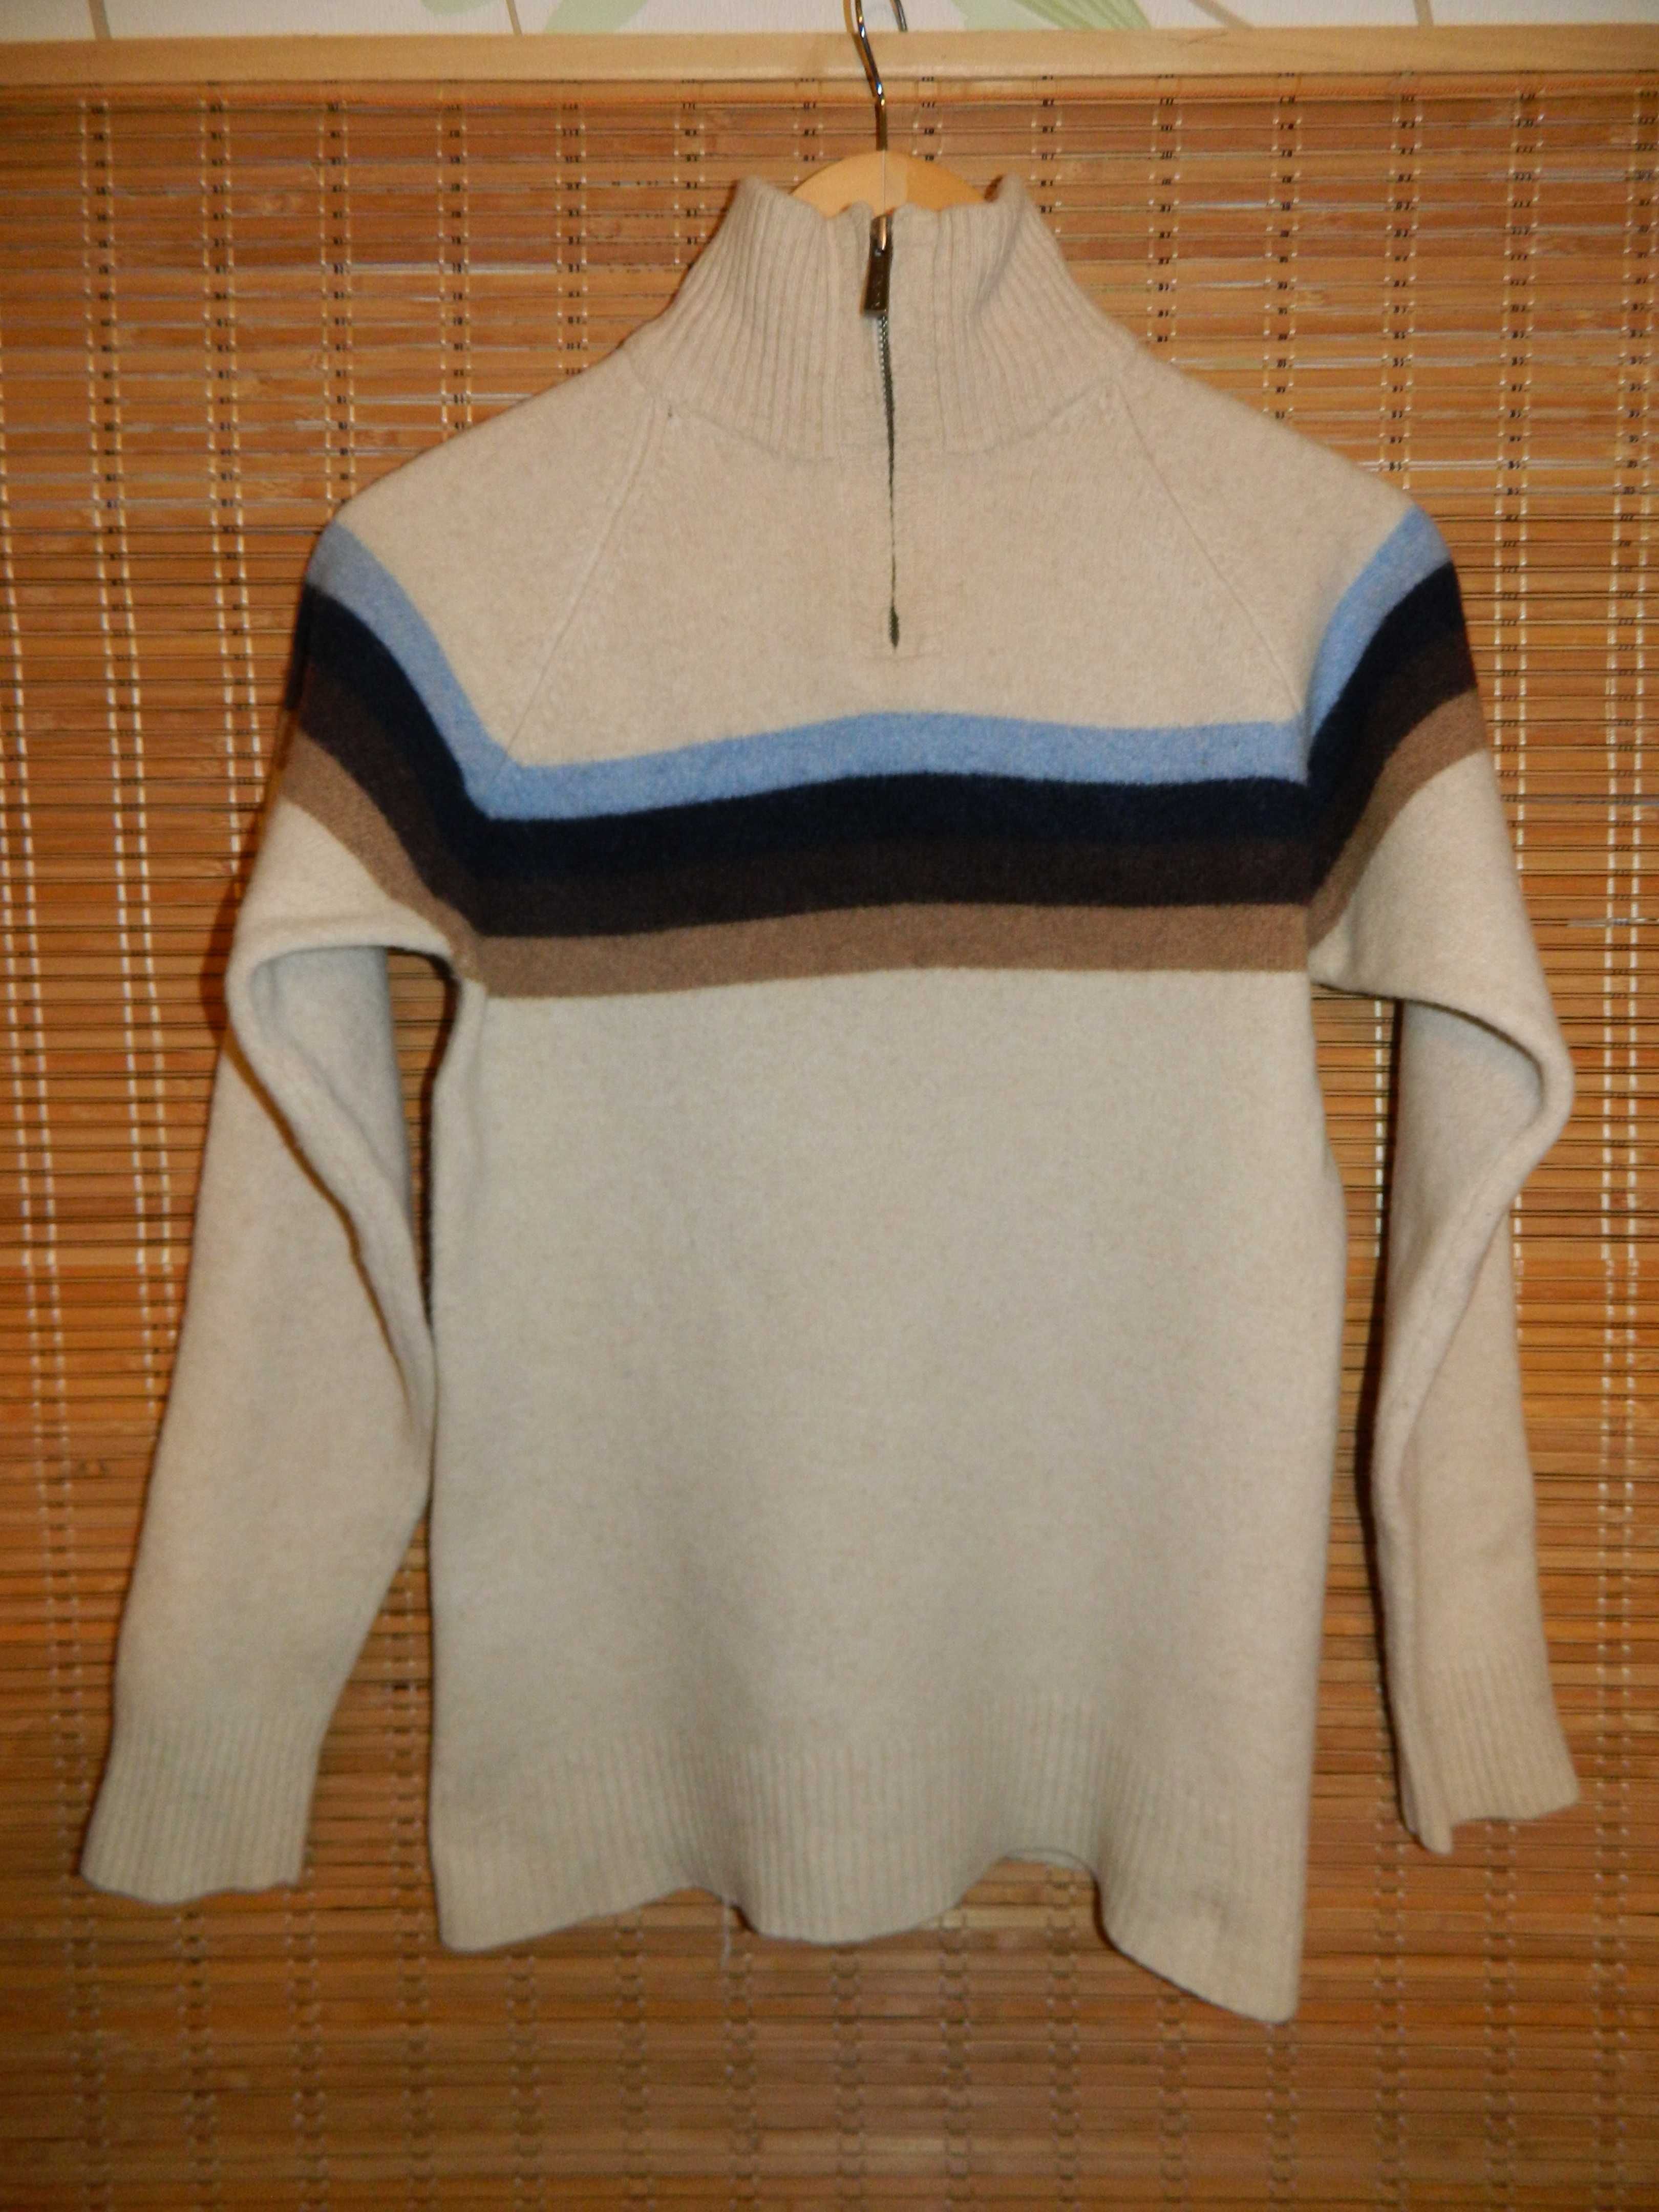 Мужской свитер, 100% шерсть Ламы. Прекрасное качество